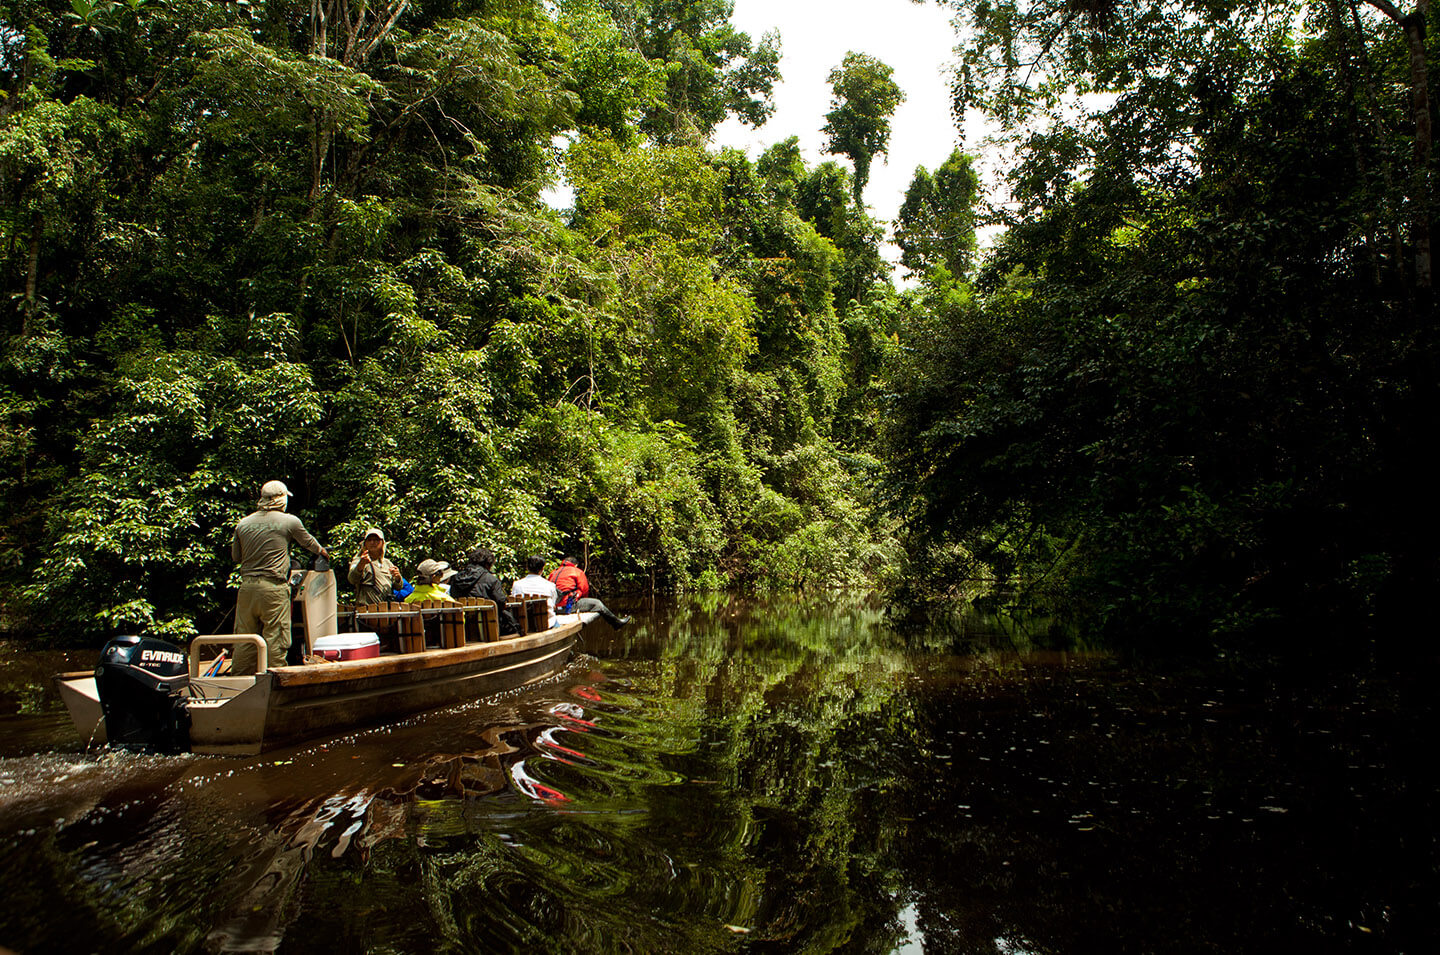 7-Excursion-into-the-Amazon